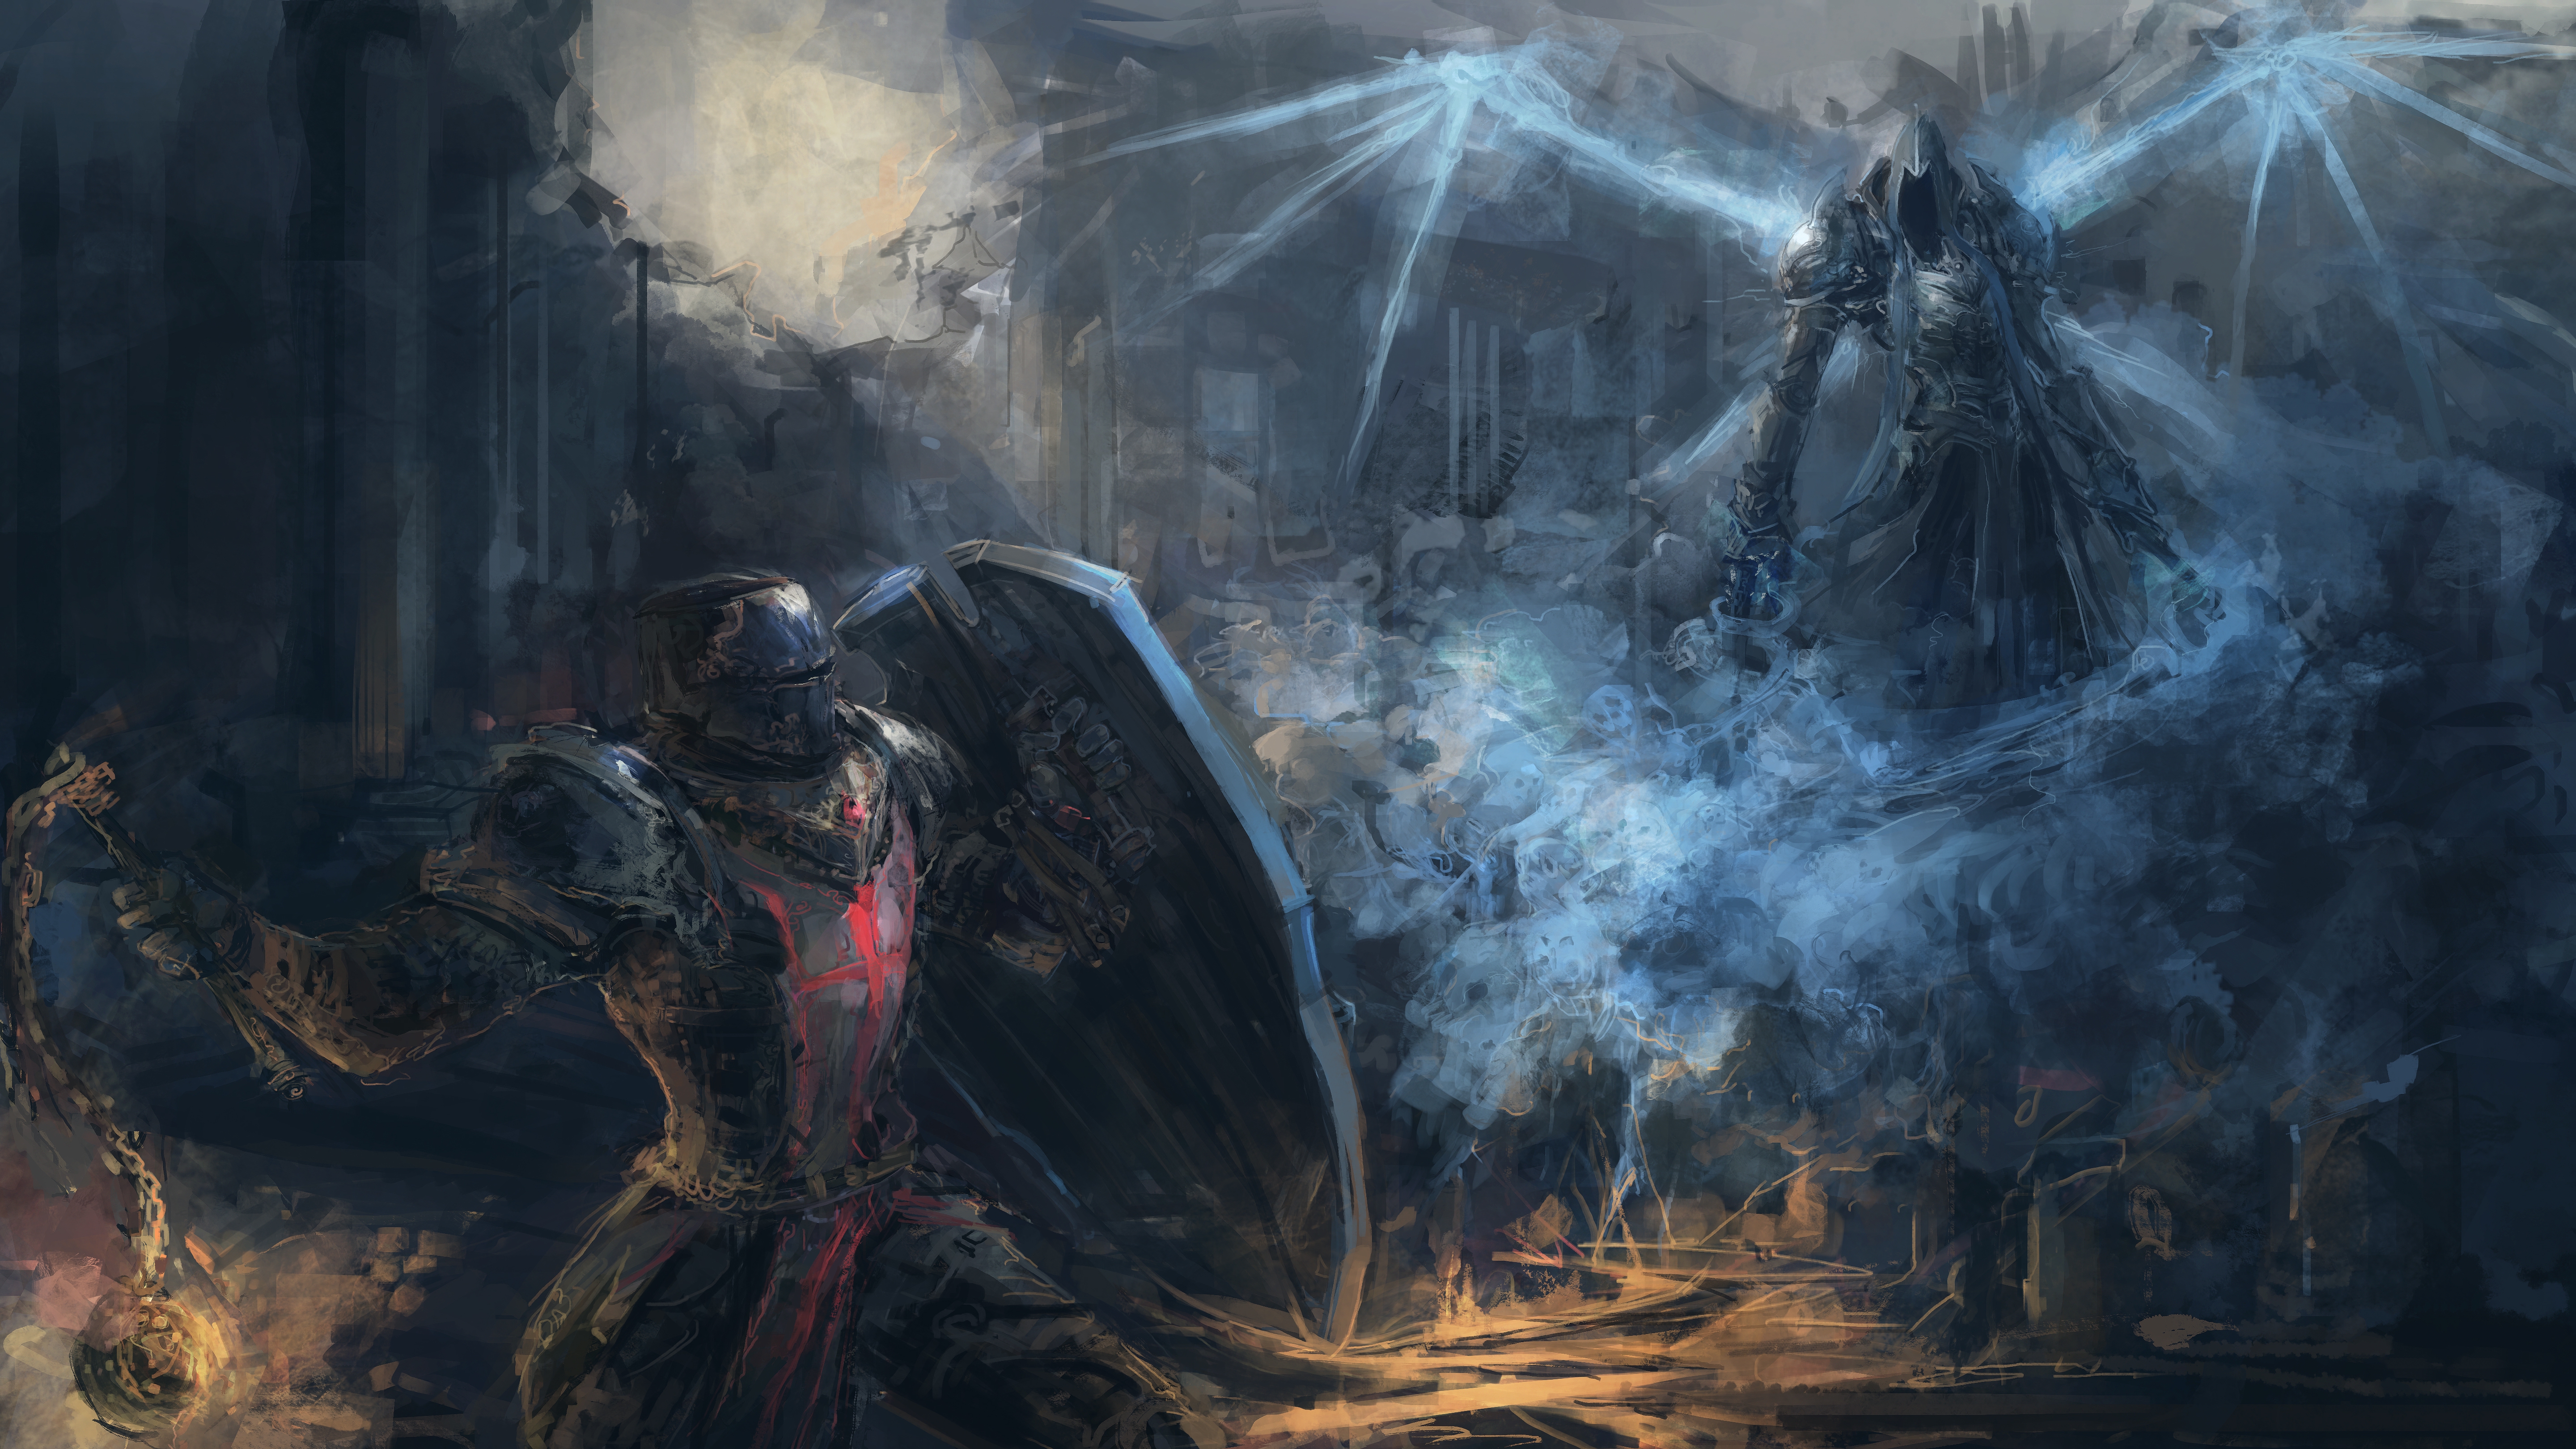 Video Game Diablo III: Reaper Of Souls 4k Ultra HD Wallpaper by Jason Nguyen